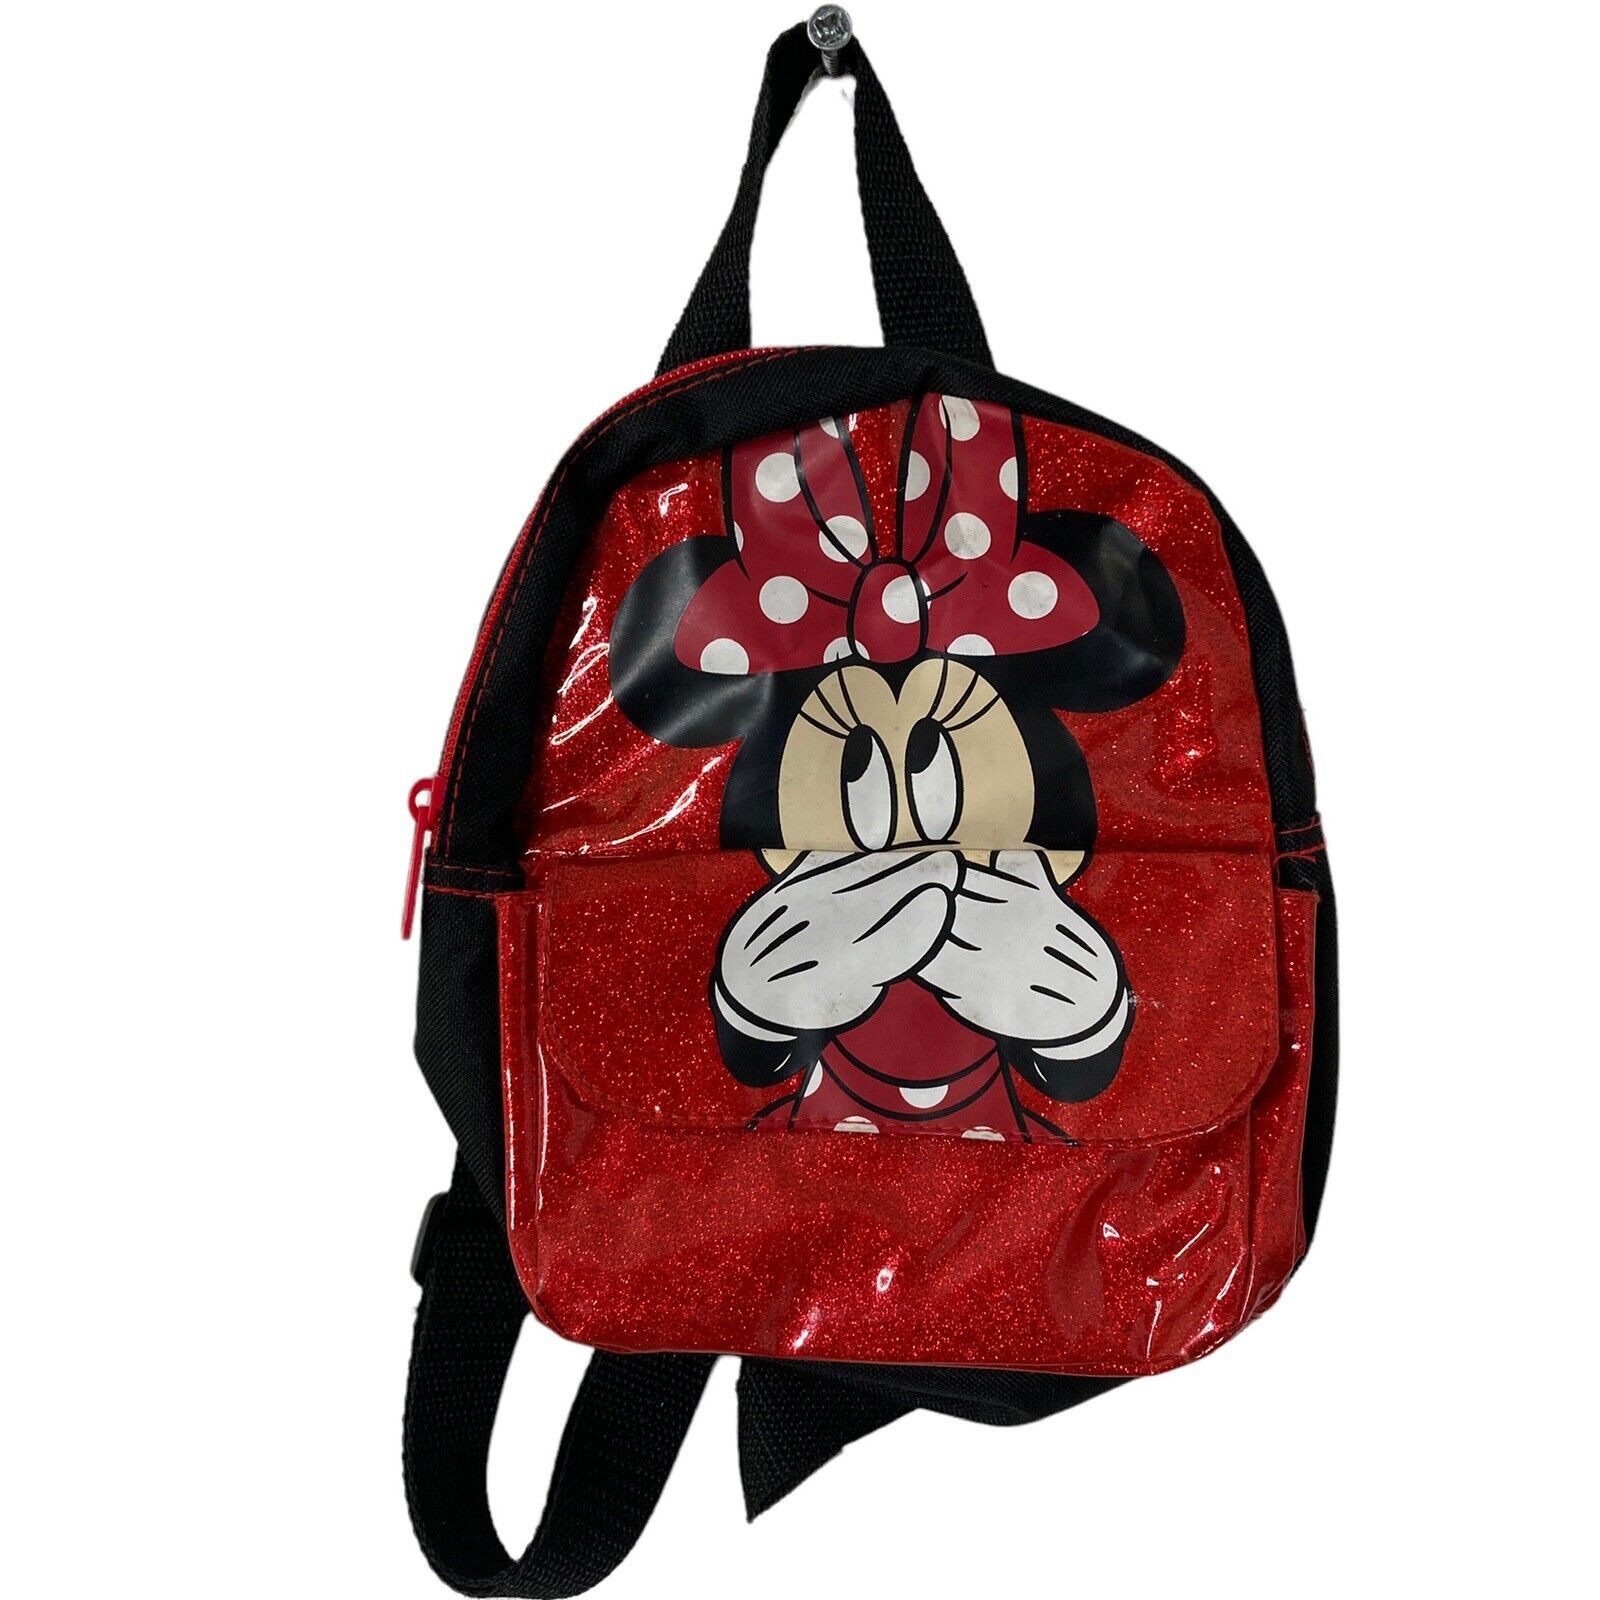 Disney Mini Mouse Mini Backpack Red Black Small 8x7.5